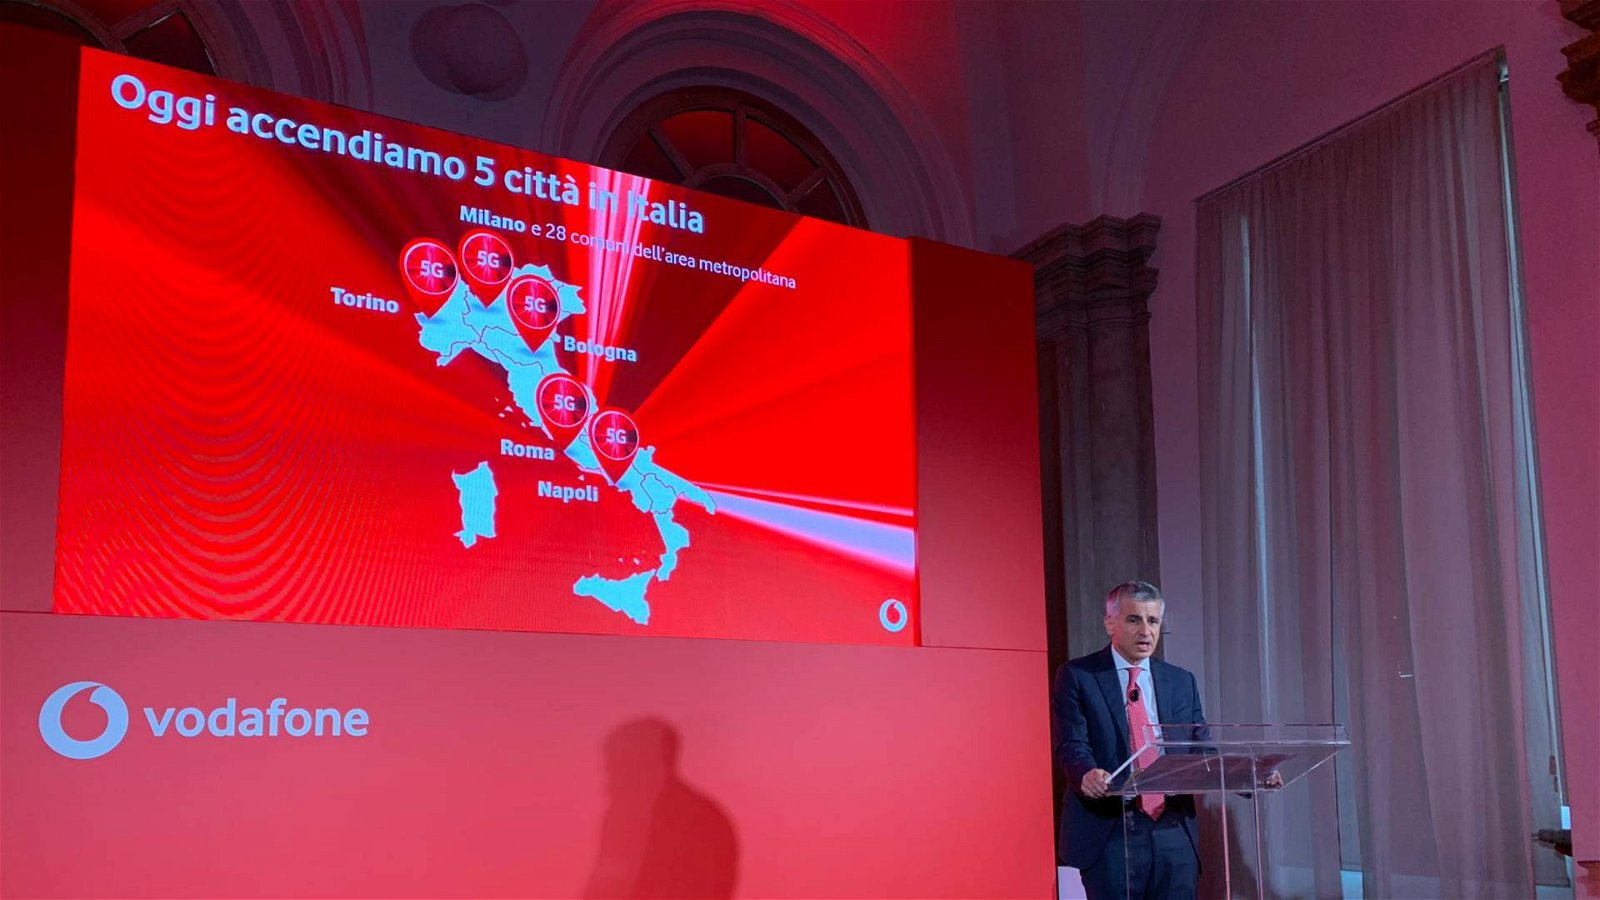 Immagine di Vodafone 5G accesa a Milano, Torino, Bologna, Roma e Napoli